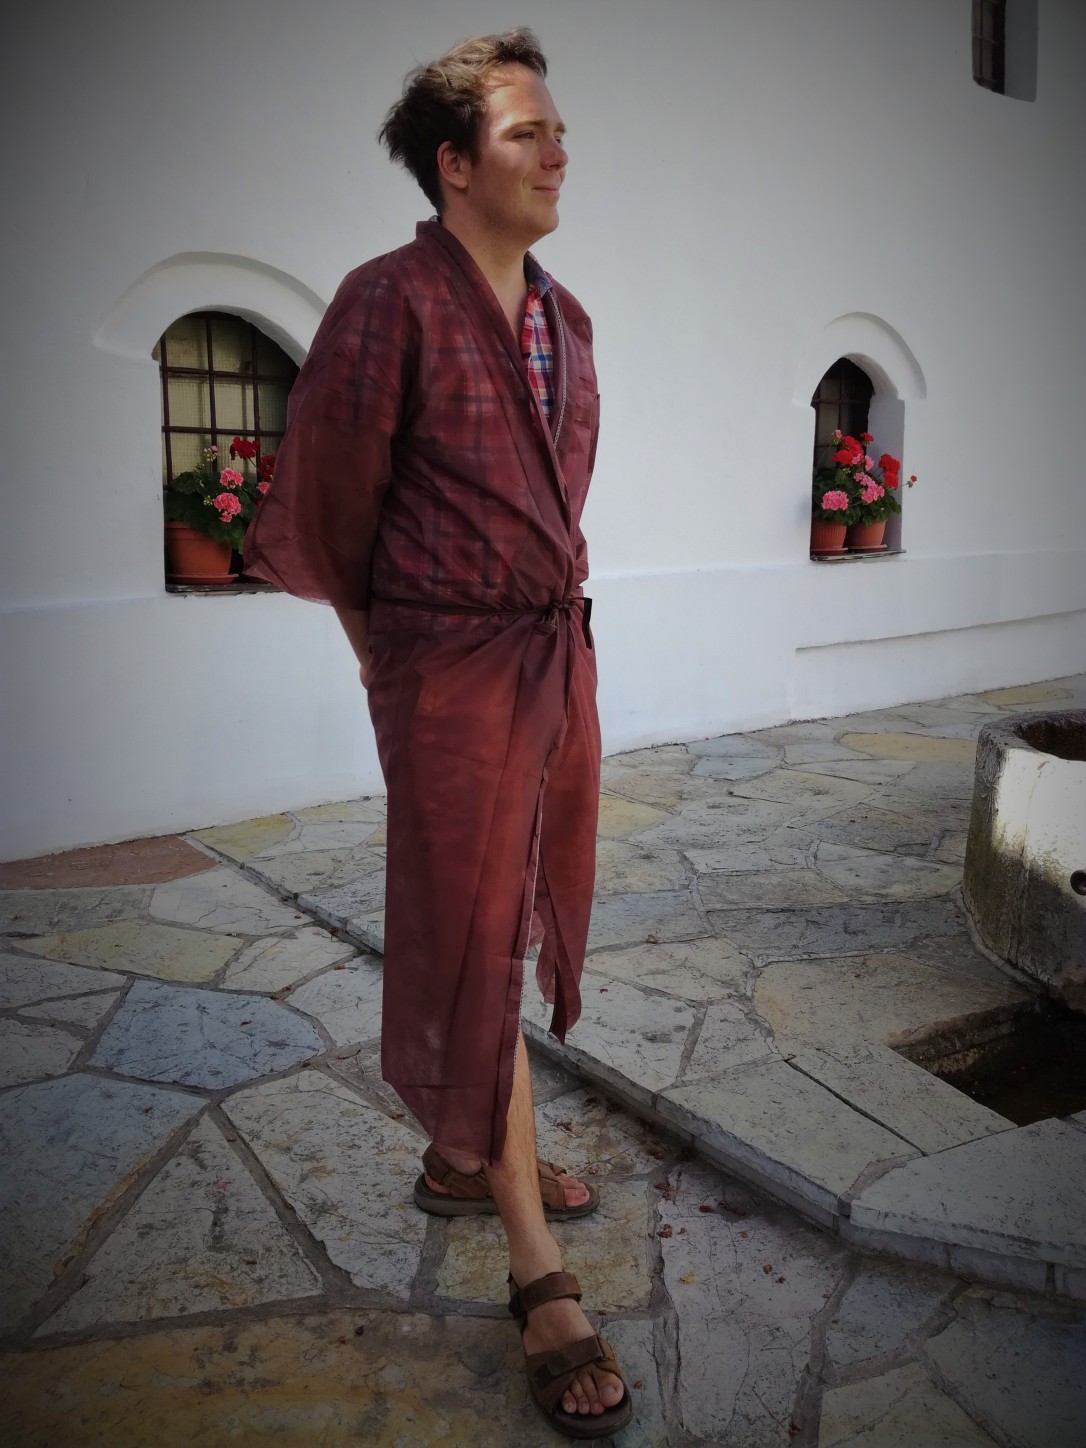 Ben in monastery robes